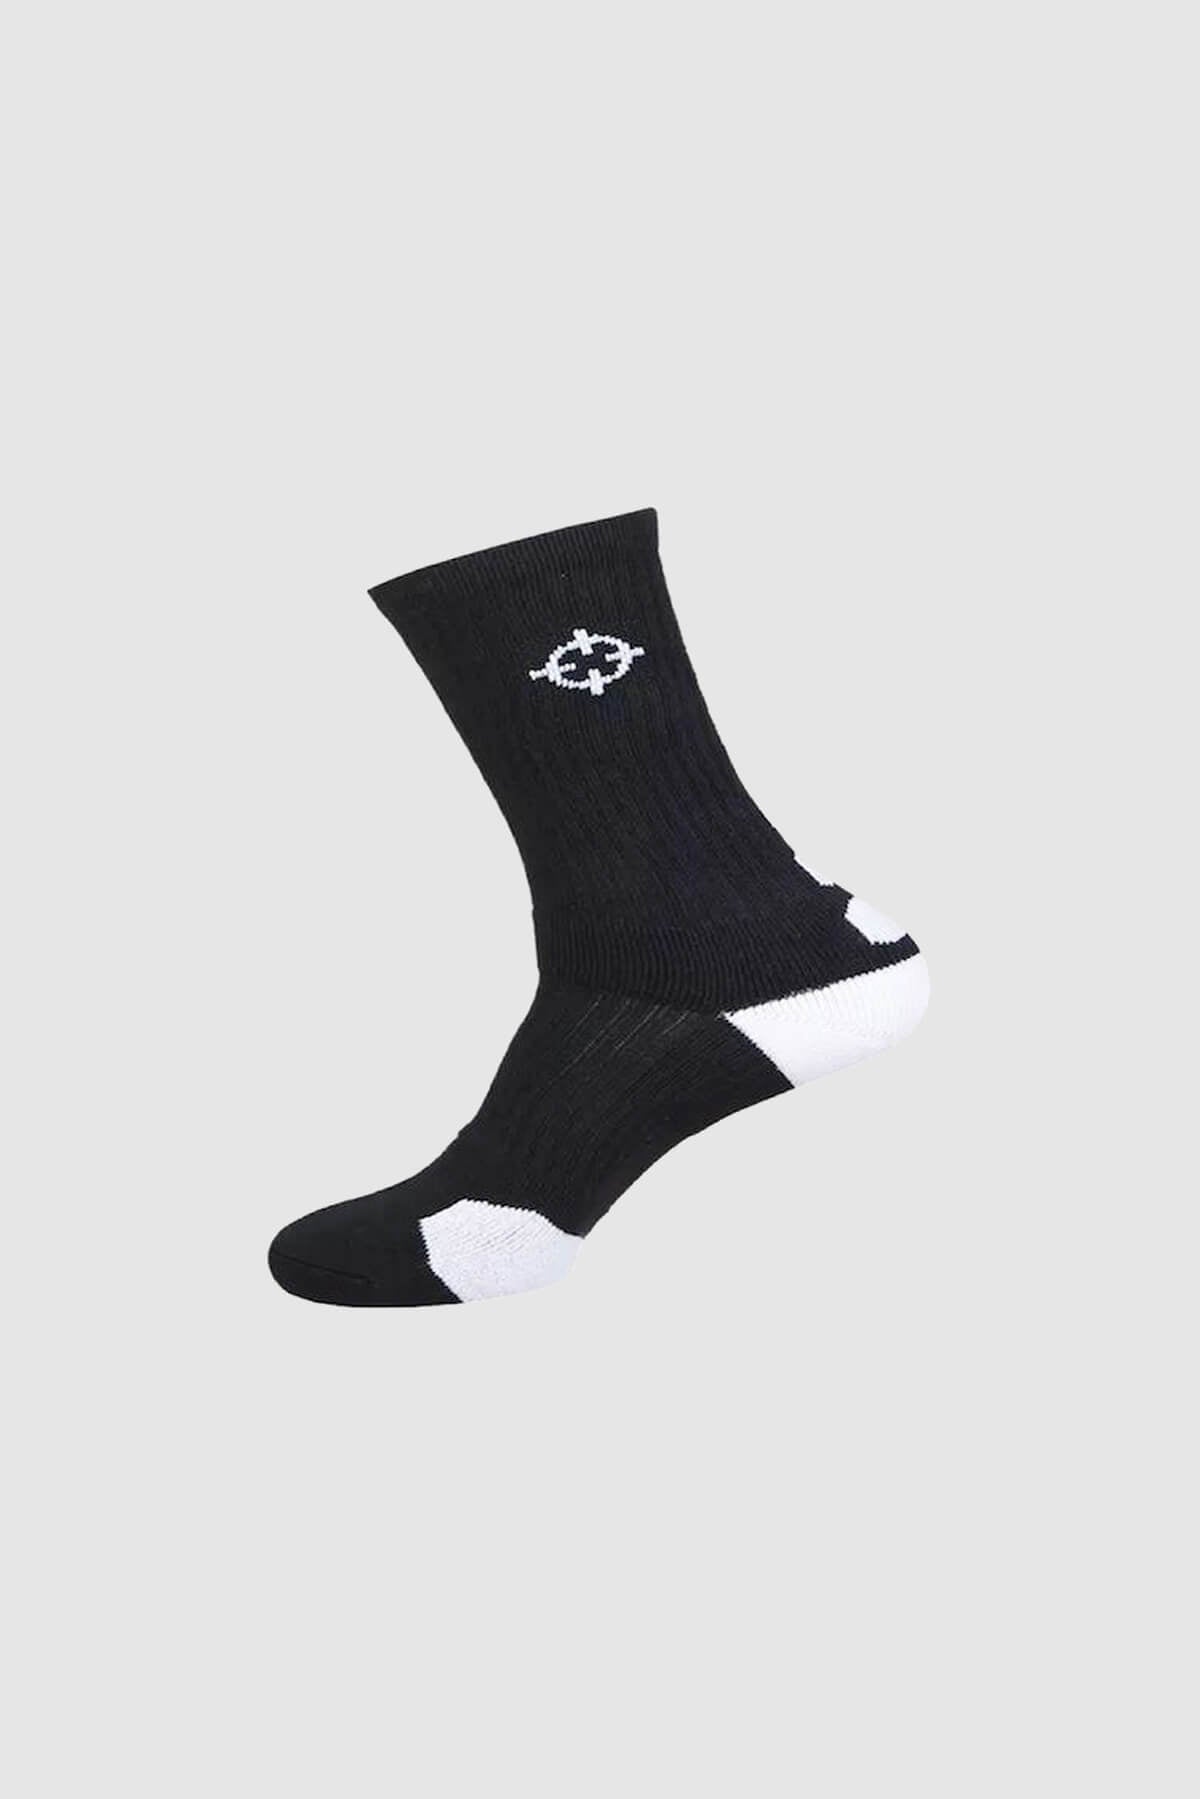 Black/White|Rigorer Kids Crew Socks